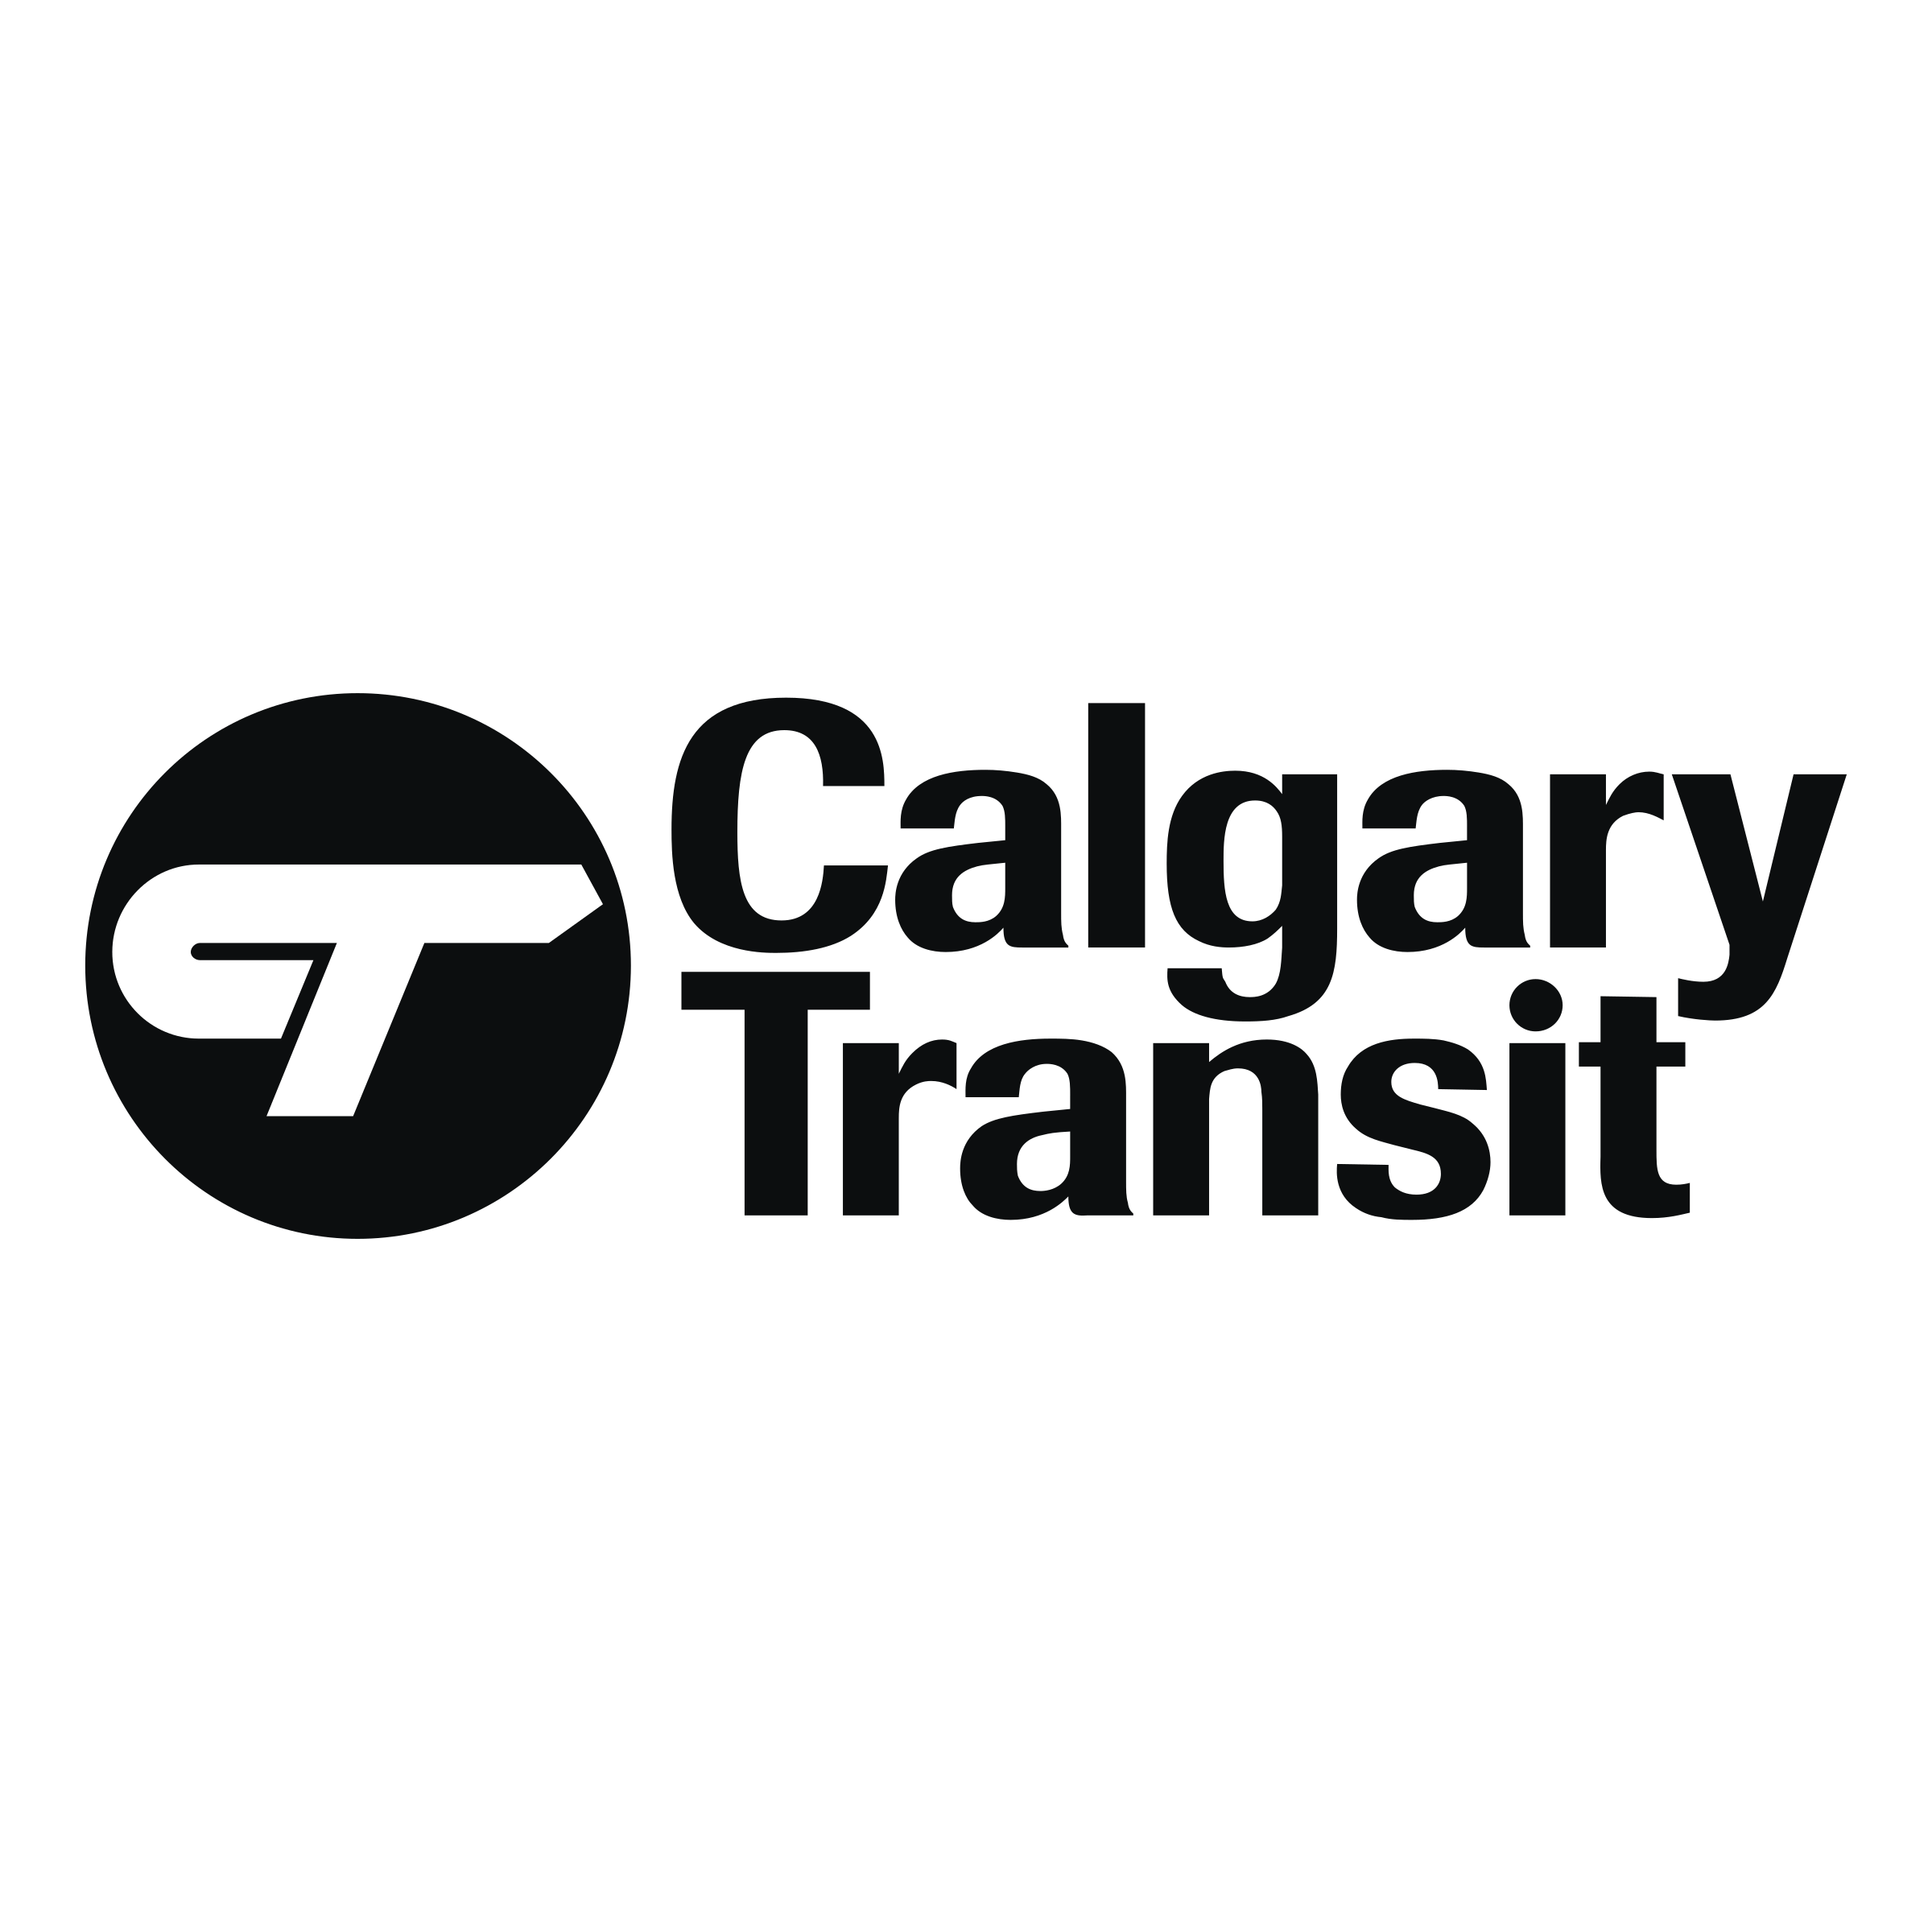 Transit Logo - Calgary Transit Logo PNG Transparent & SVG Vector - Freebie Supply